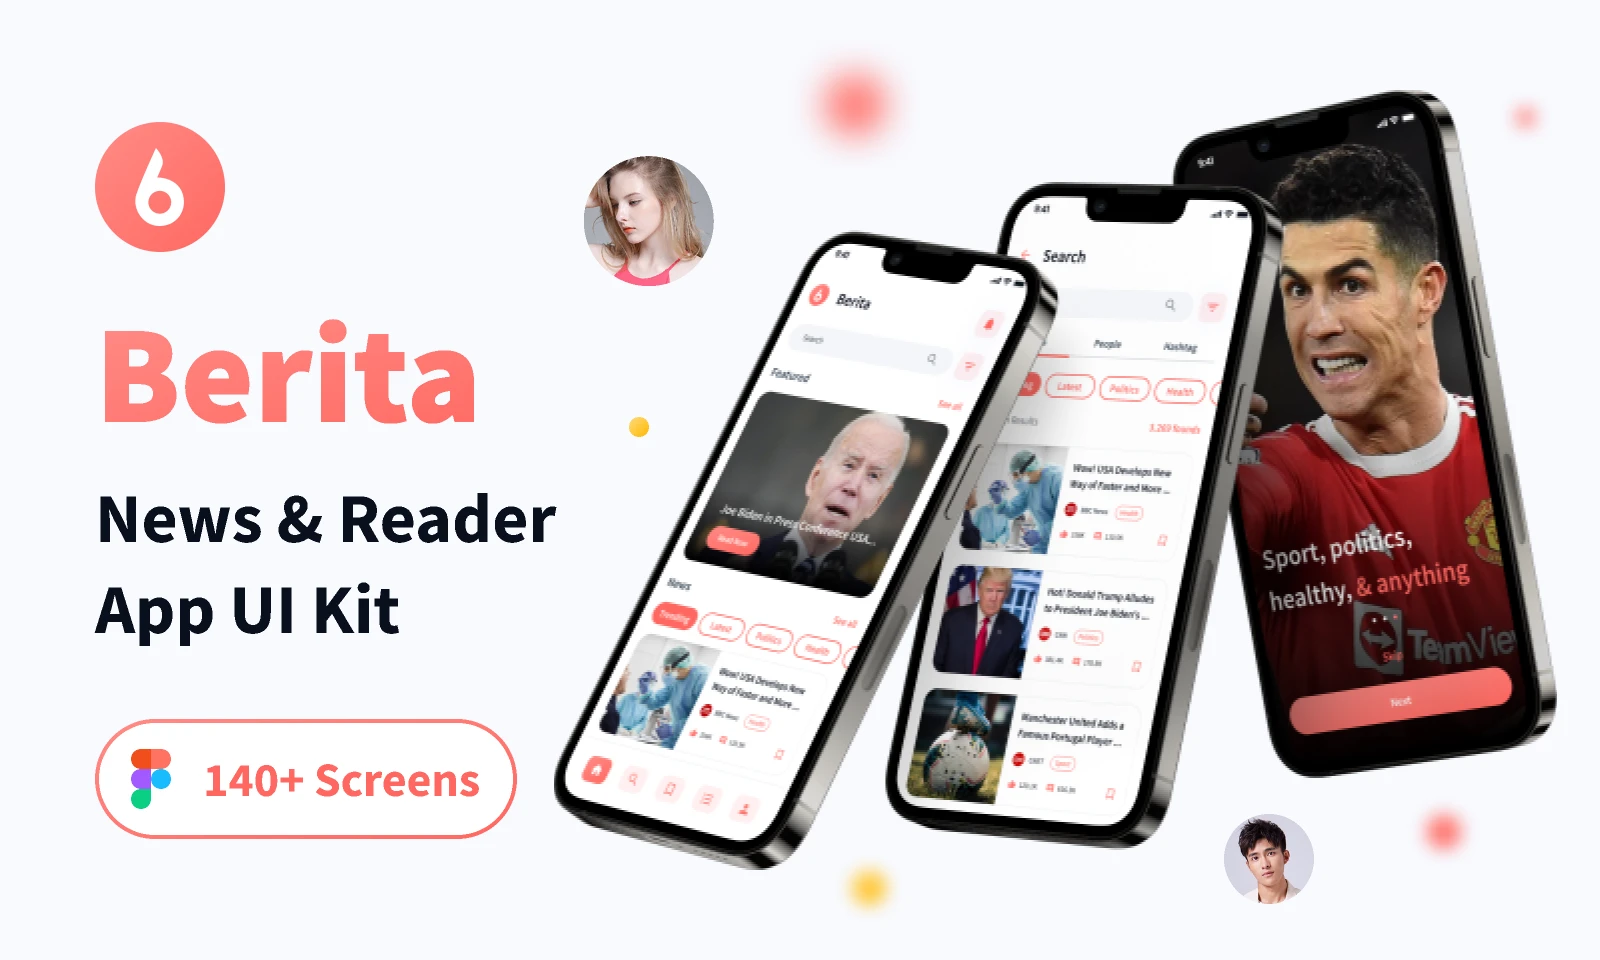 Berita - News & Reader App UI Kit for Figma and Adobe XD